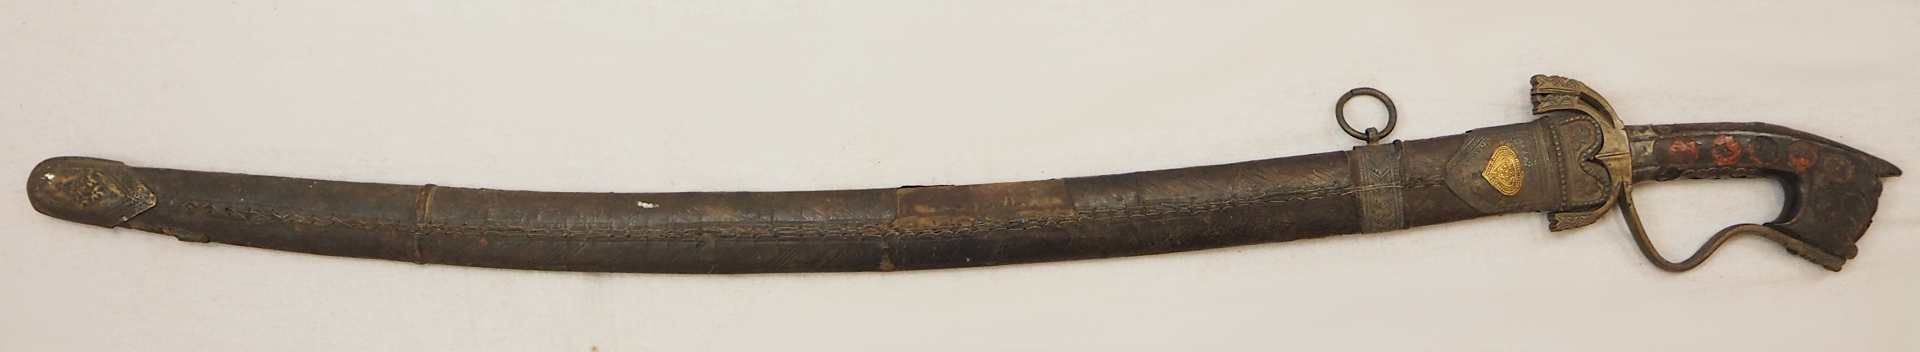 1 orientanlischer Säbel wohl 19. Jh. Klinge mit Doppelkehlung, Holzgriff mit Metallap - Bild 3 aus 5